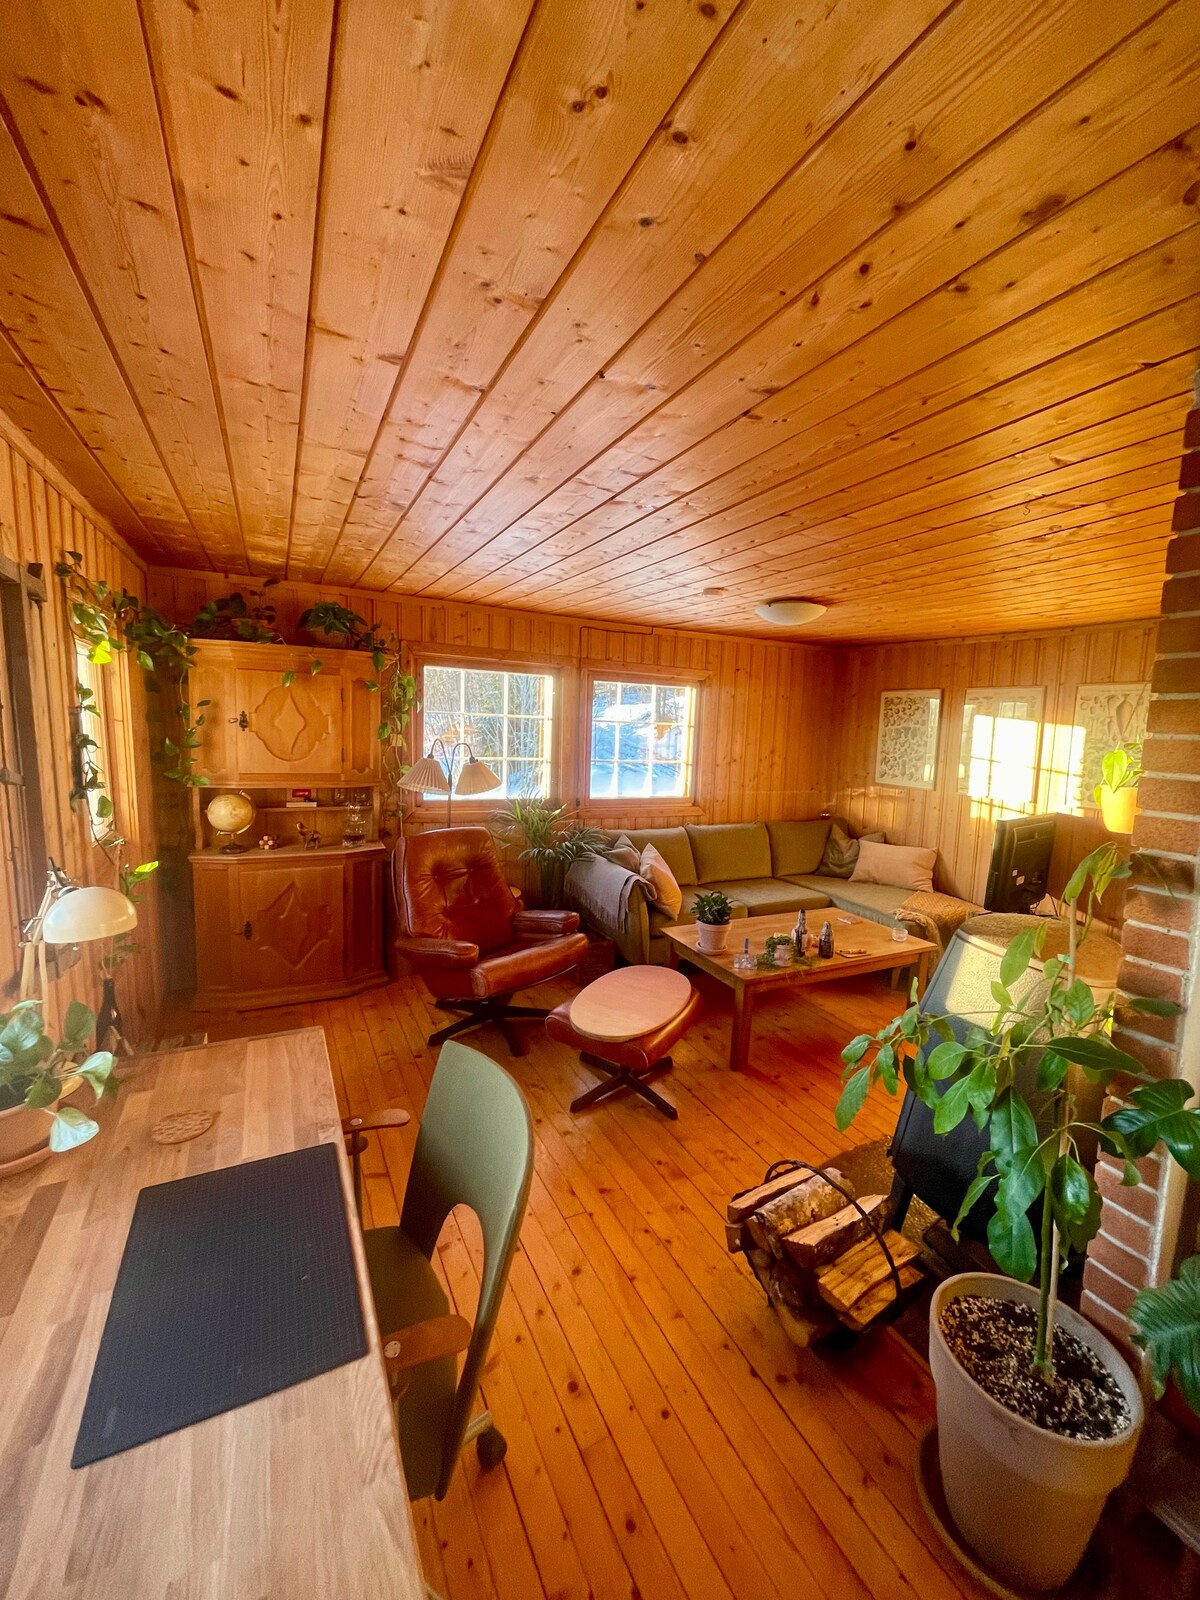 Cute cozy cabin